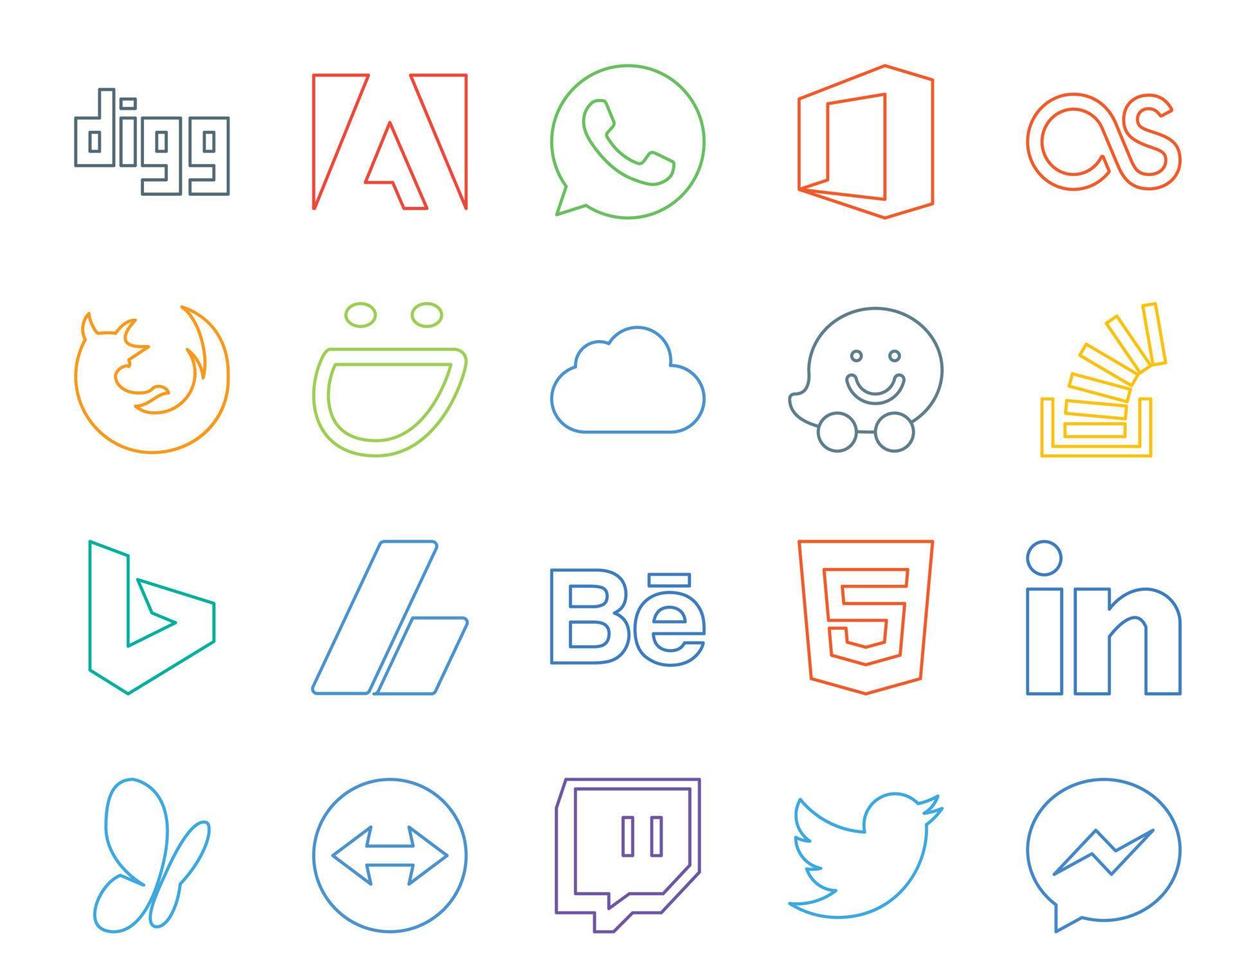 Paquete de 20 íconos de redes sociales que incluye behance adsense icloud bing stock vector